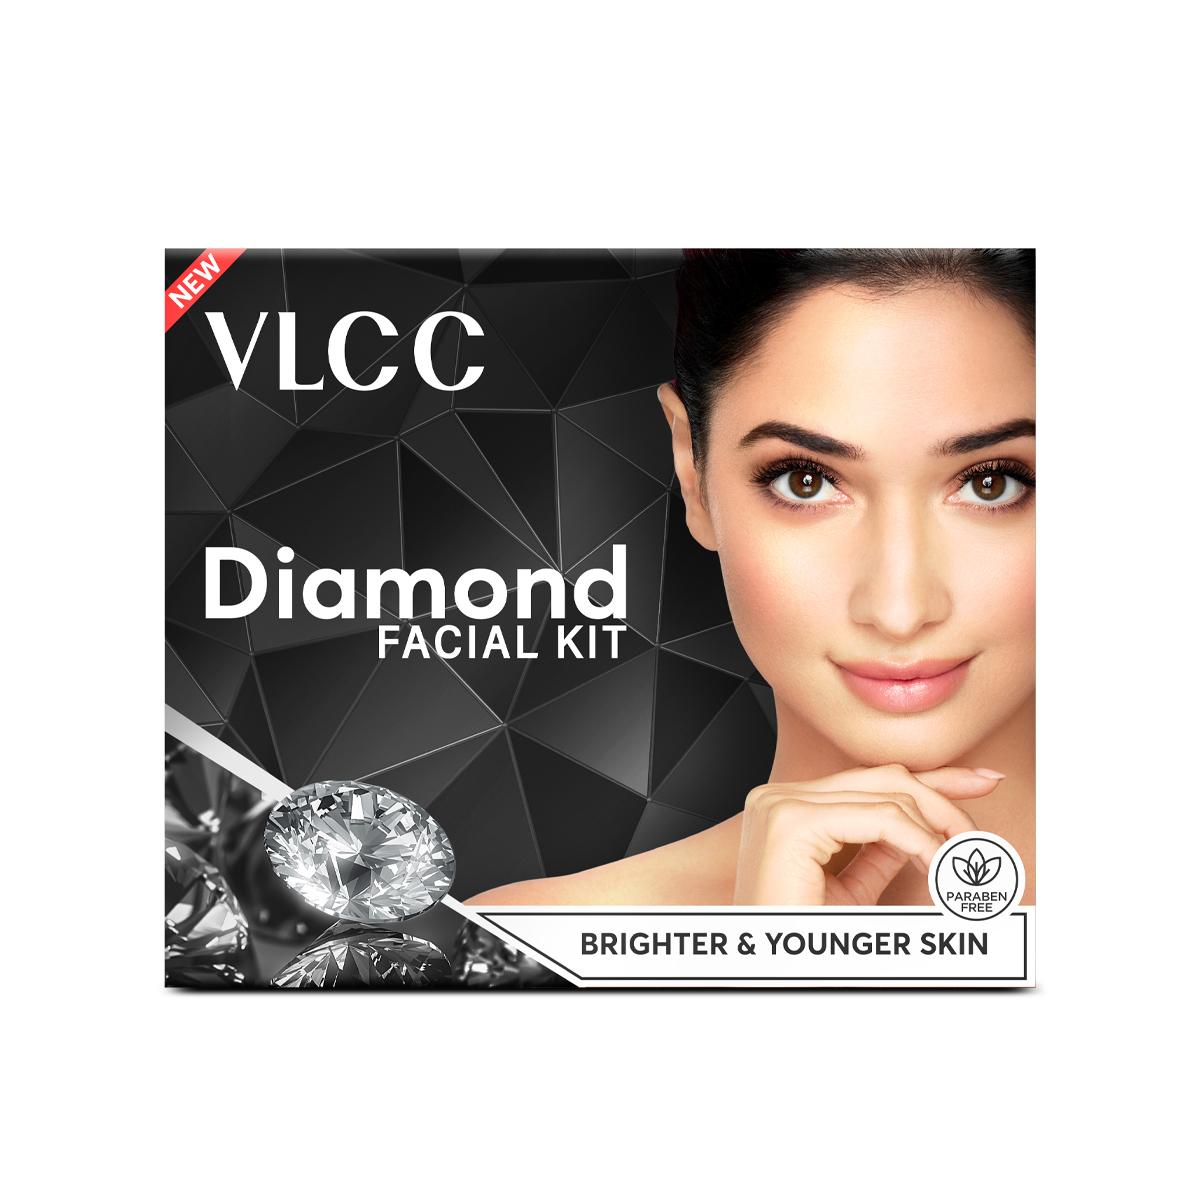 VLCC Diamond Single Facial Kit - Reveal Glowing Skin with Diamond Radiance